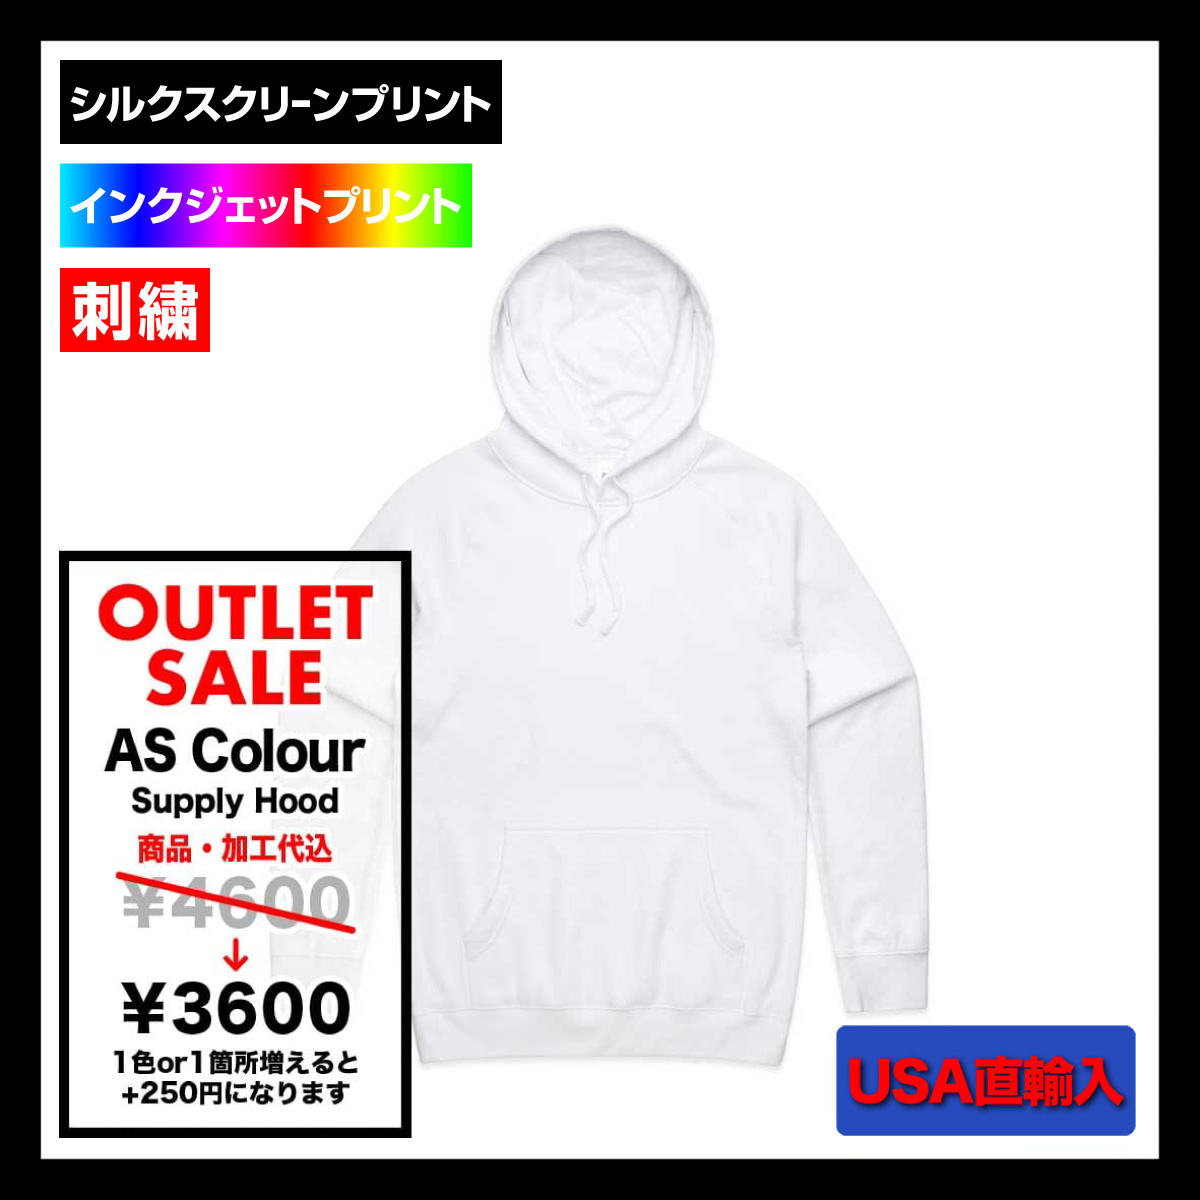 【在庫限りSALE】 AS Colour アズカラー 8.5 oz Supply Hood (品番5101US)